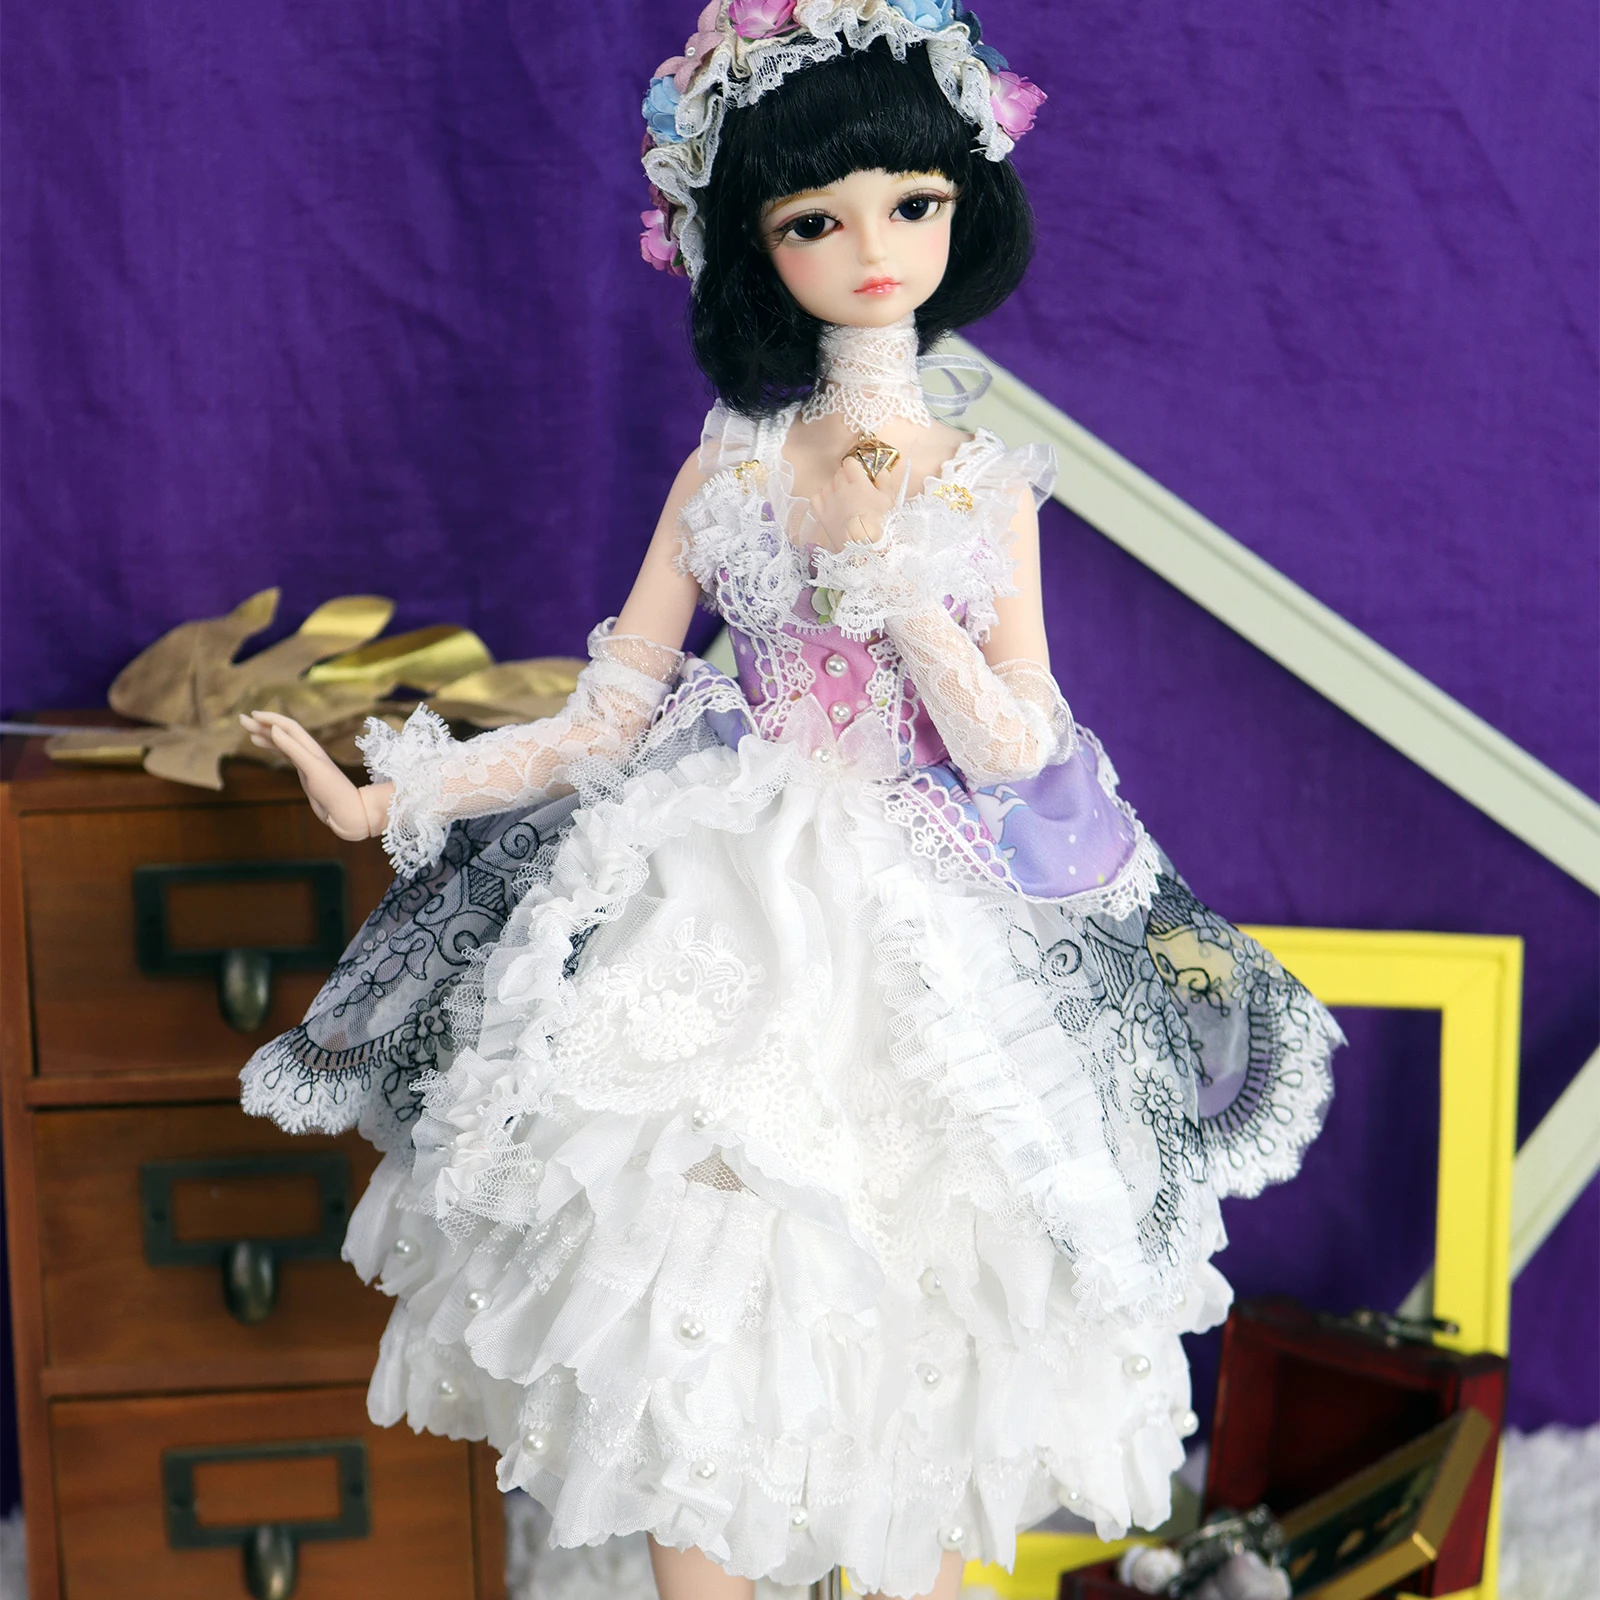 

Кукла DBS 1/4 BJD No.10, механическое тело со светлыми волосами, с макияжем, включая парик, глаза, одежда Реборн, для девочек